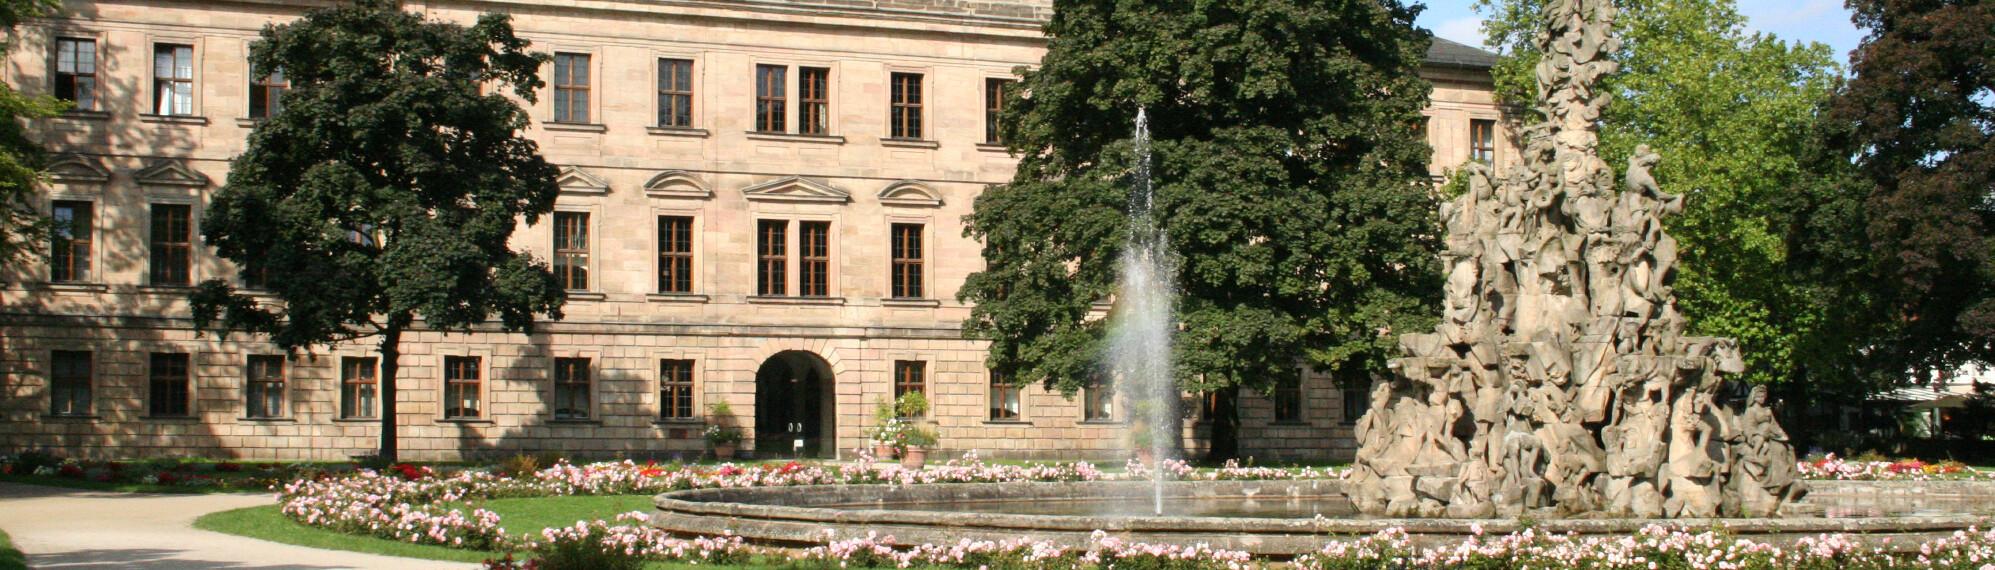 Jura an der Uni Erlangen-Nürnberg studieren